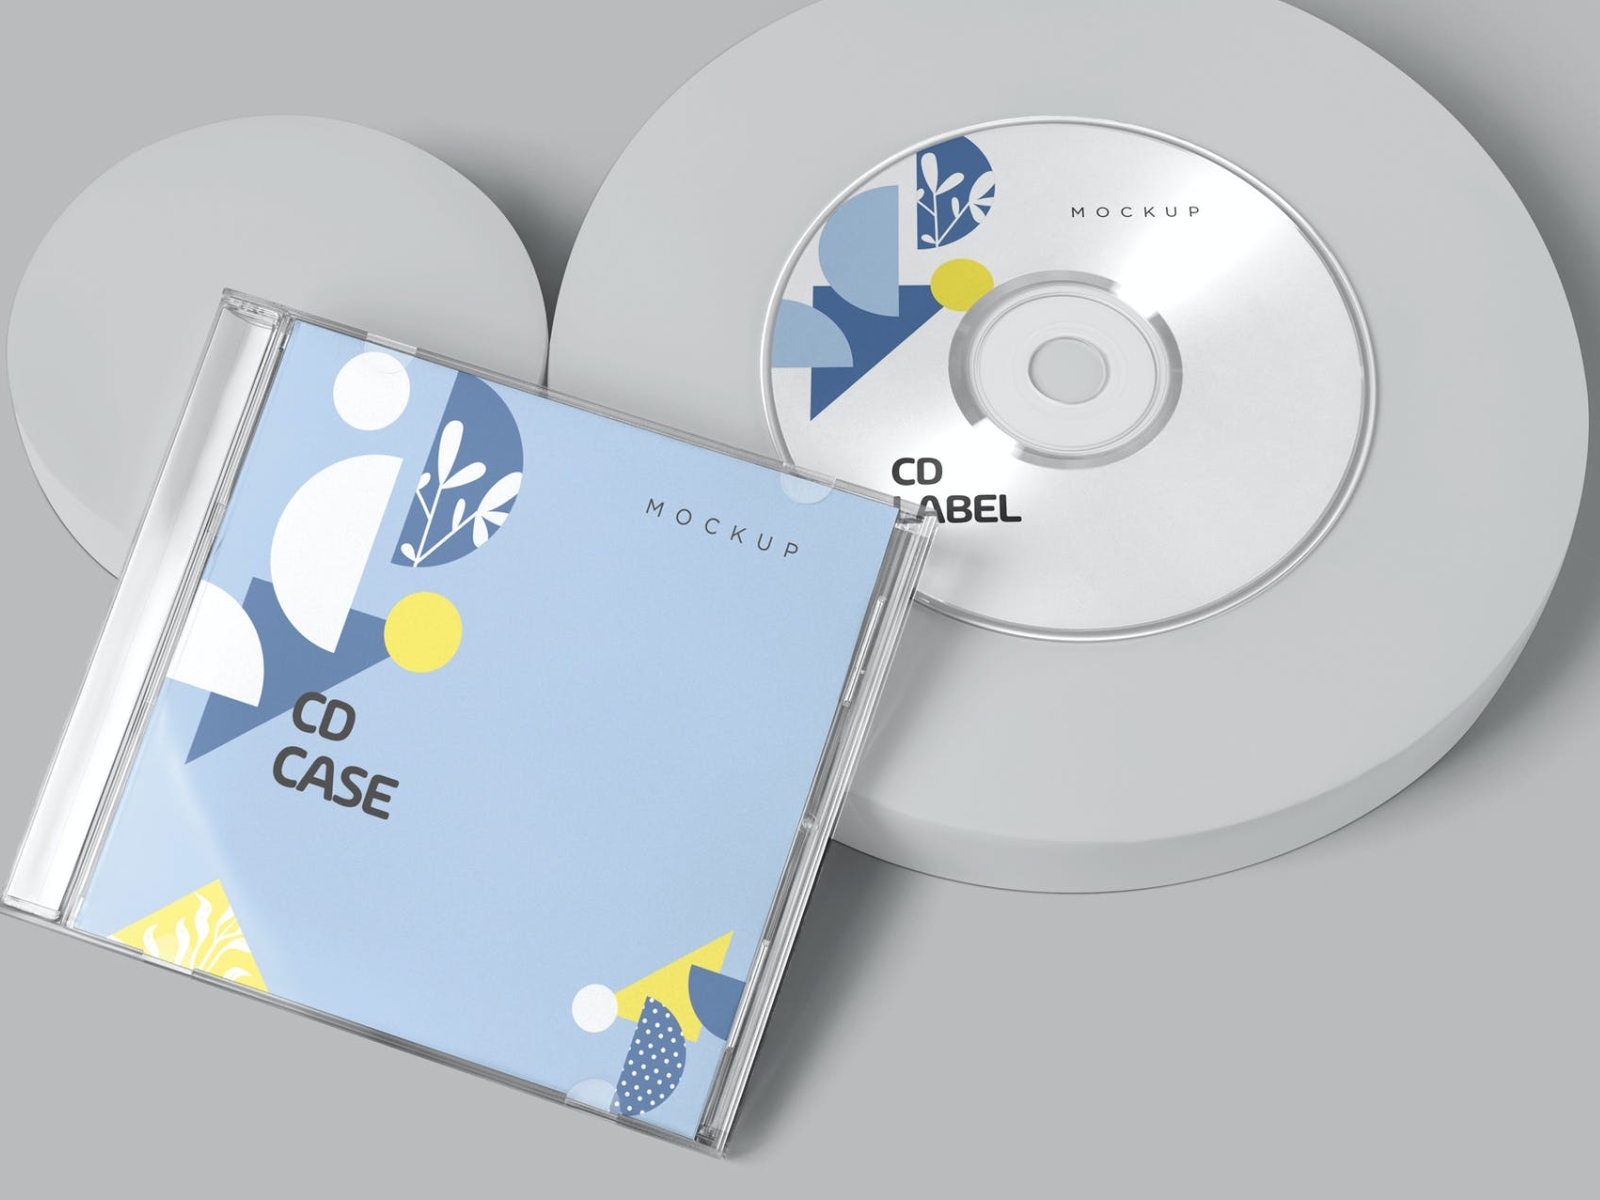 CD Label & Case Mockups 3d branding cd cd case cd label design dvd graphic design illustration logo mockup packaging packaging design typography ui ux vector